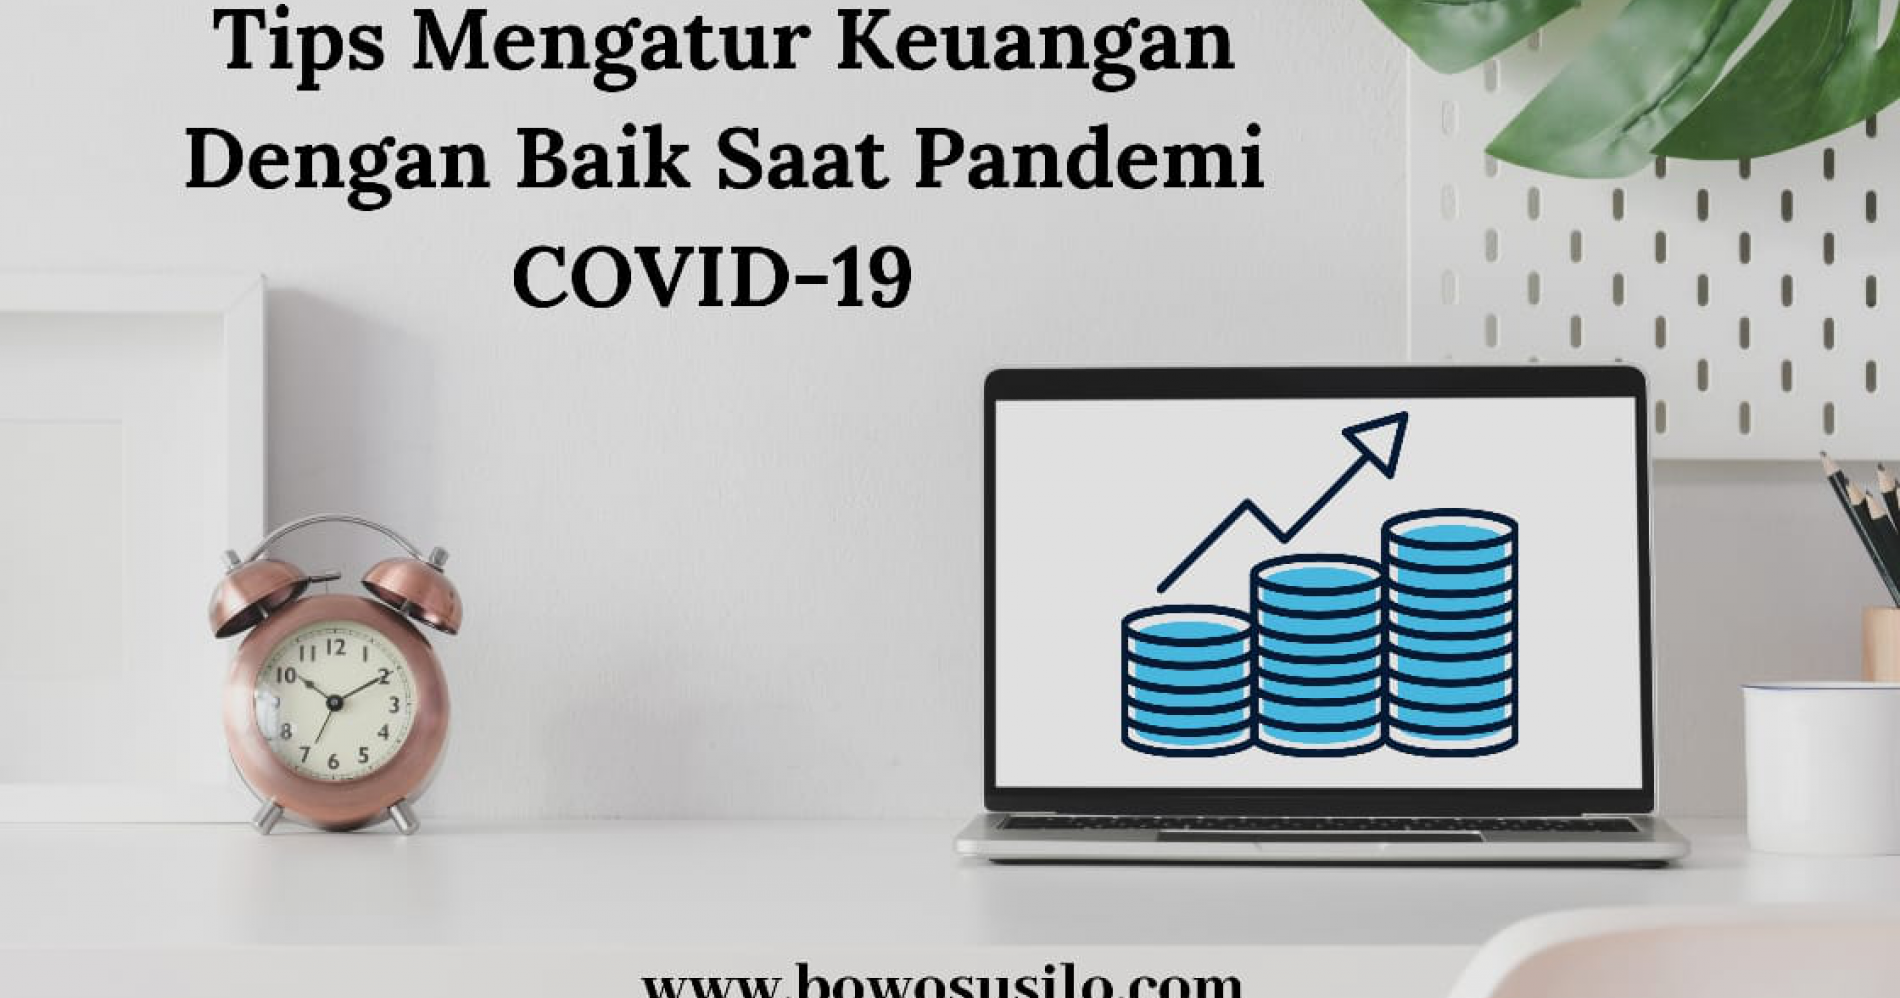 Tips Mengatur Keuangan dengan Baik Saat Pandemi Covid-19 (Sumber Gambar: www.bowosusilo.com)